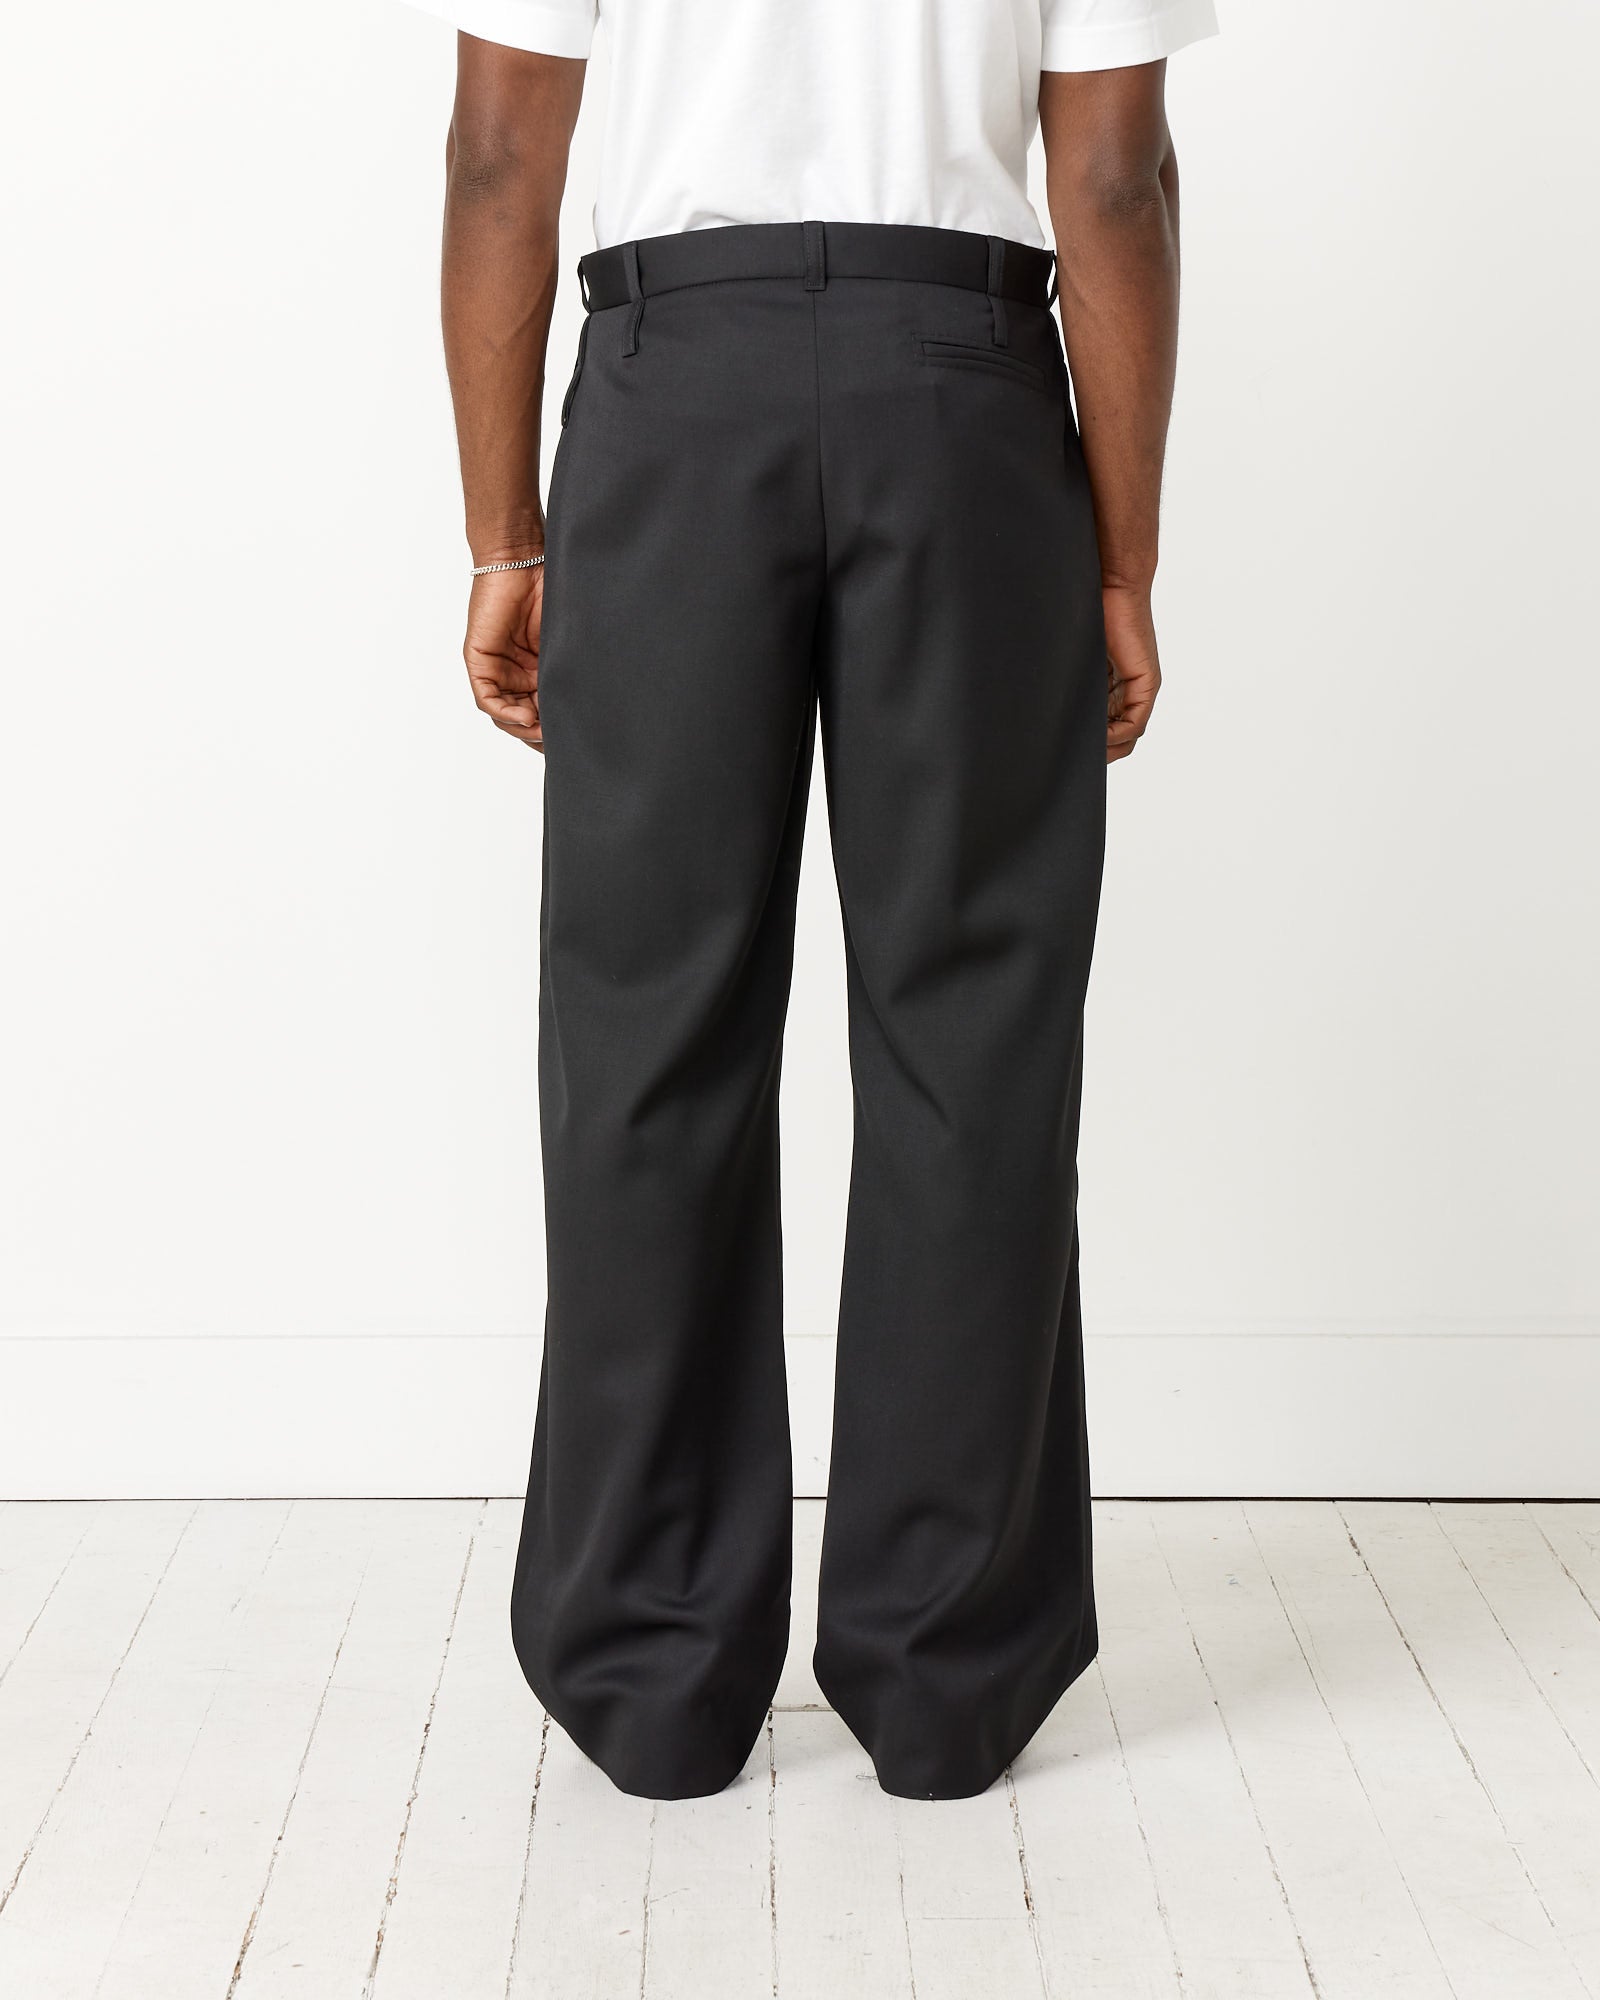 Le Pantalon Piccini Trouser – Mohawk General Store